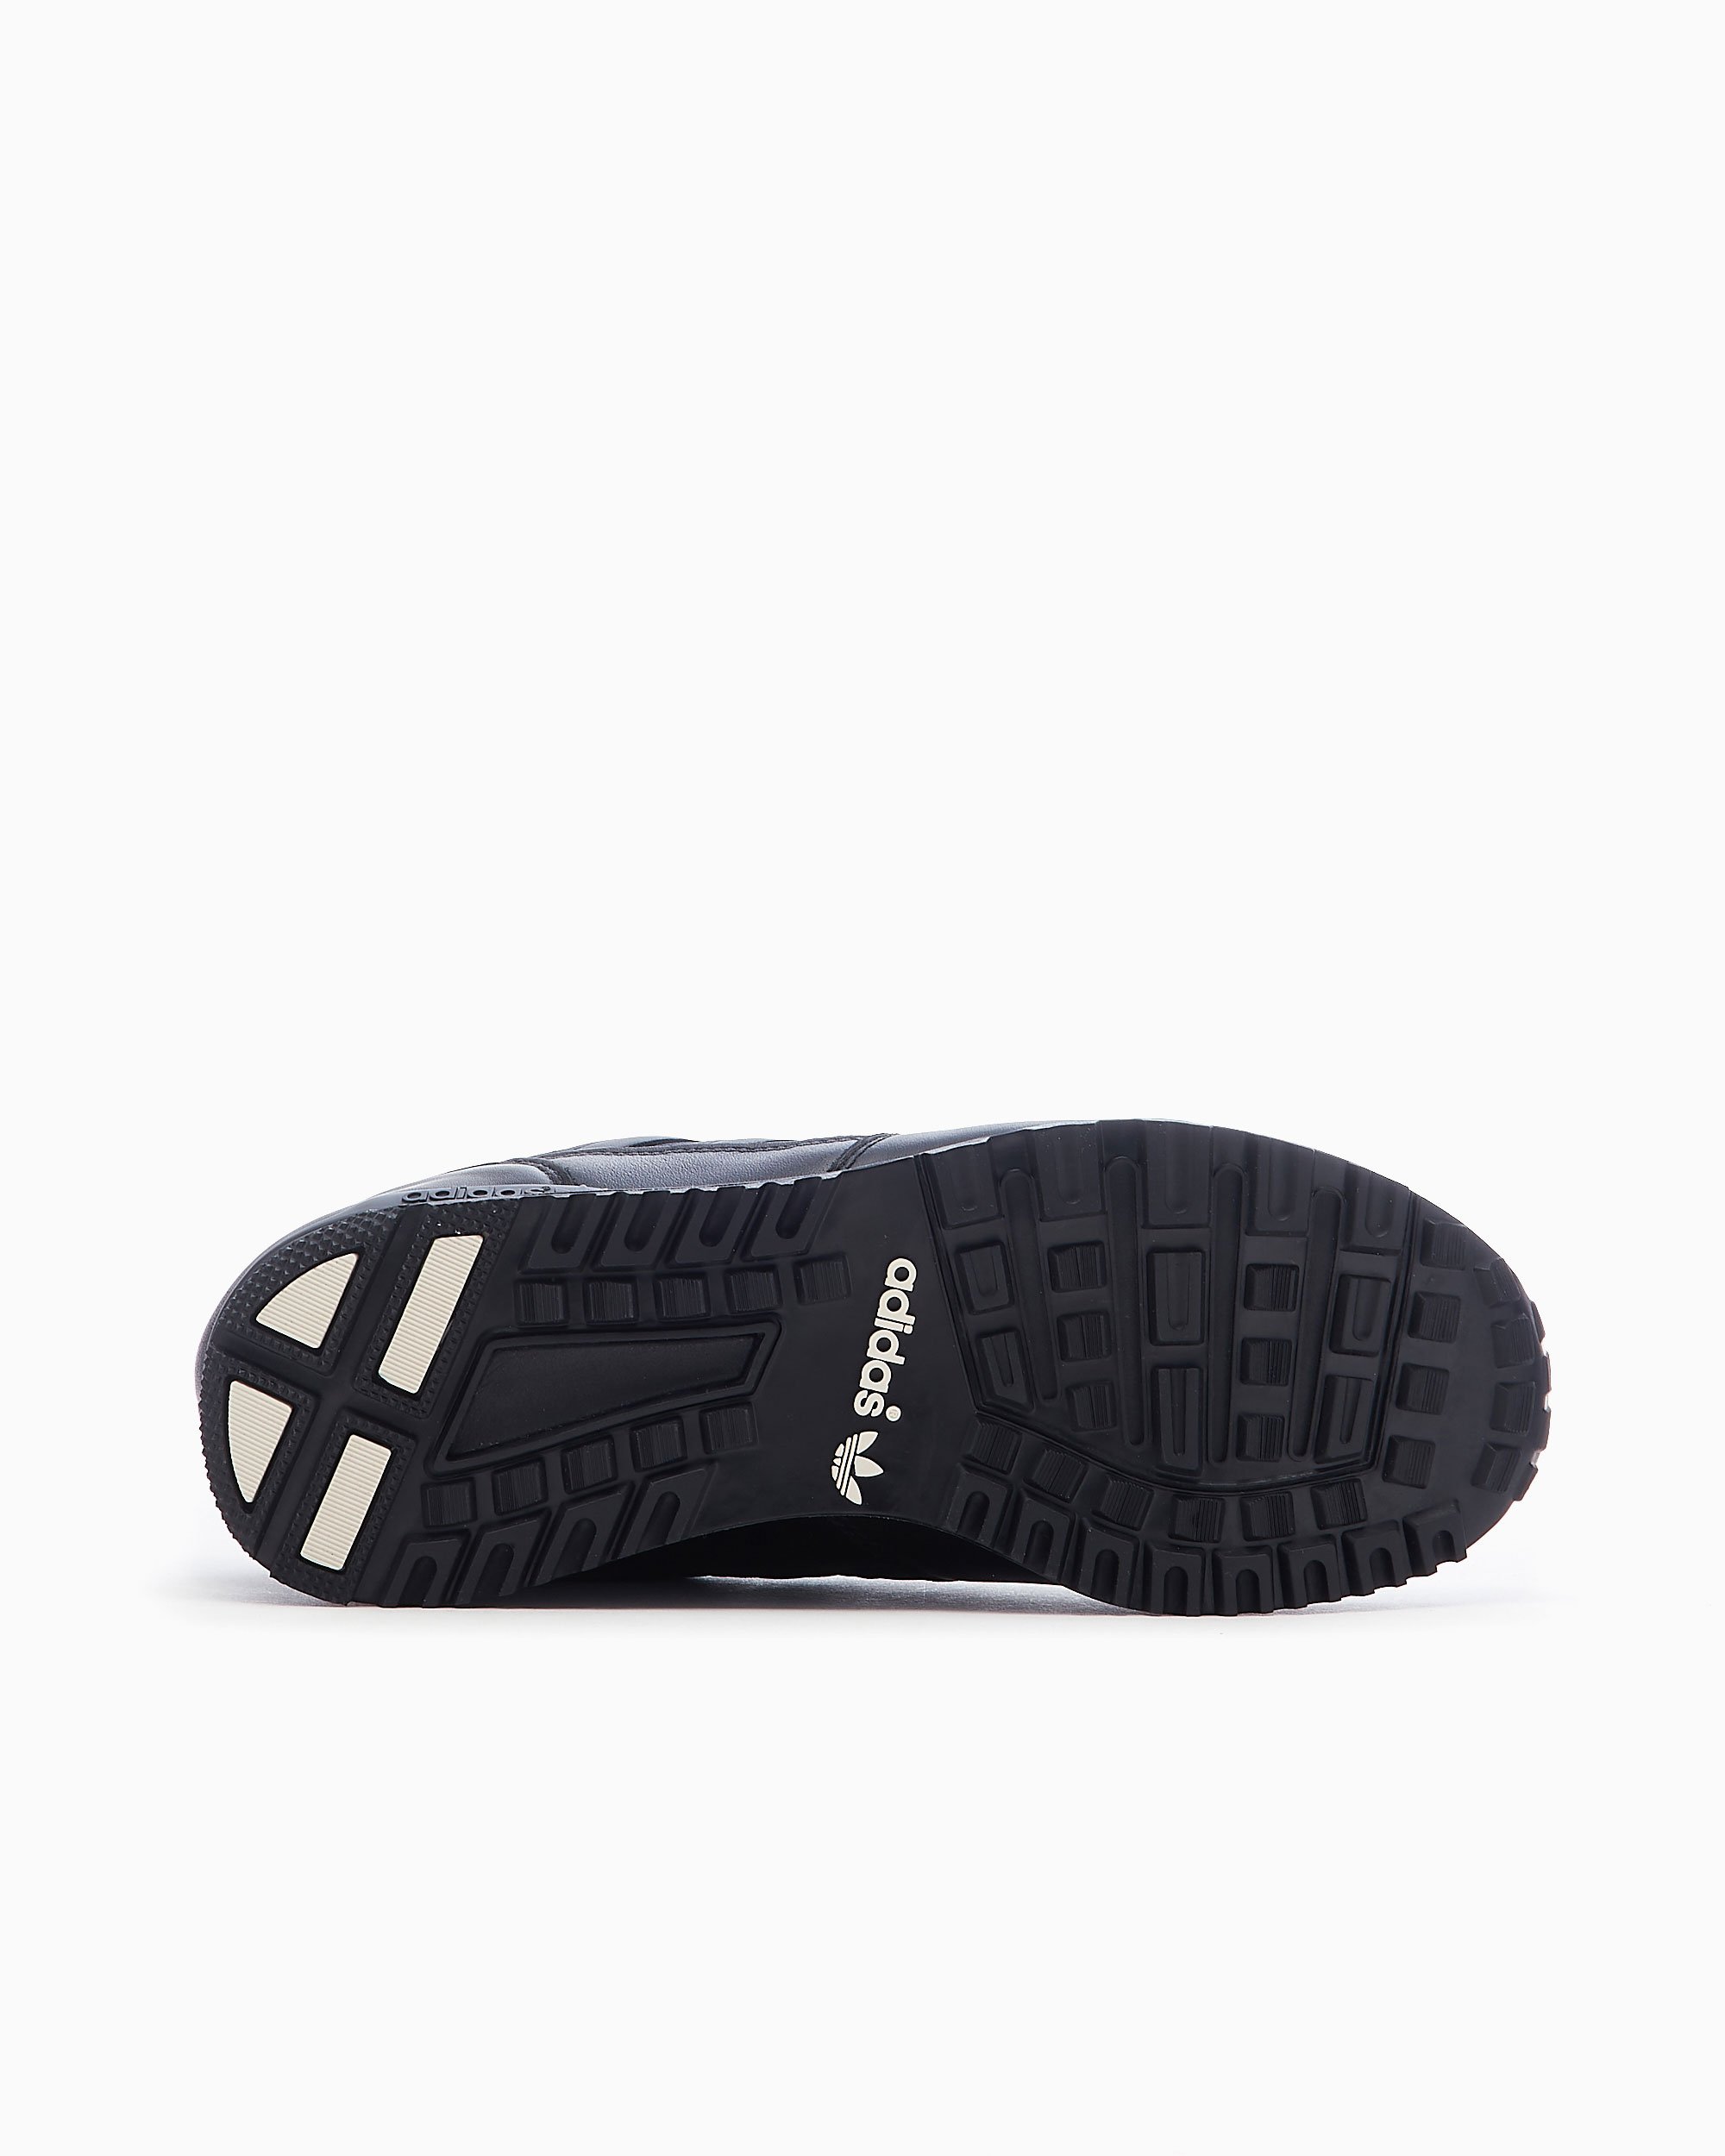 adidas Originals Spezial Hartness Black HP8844 | FOOTDISTRICT